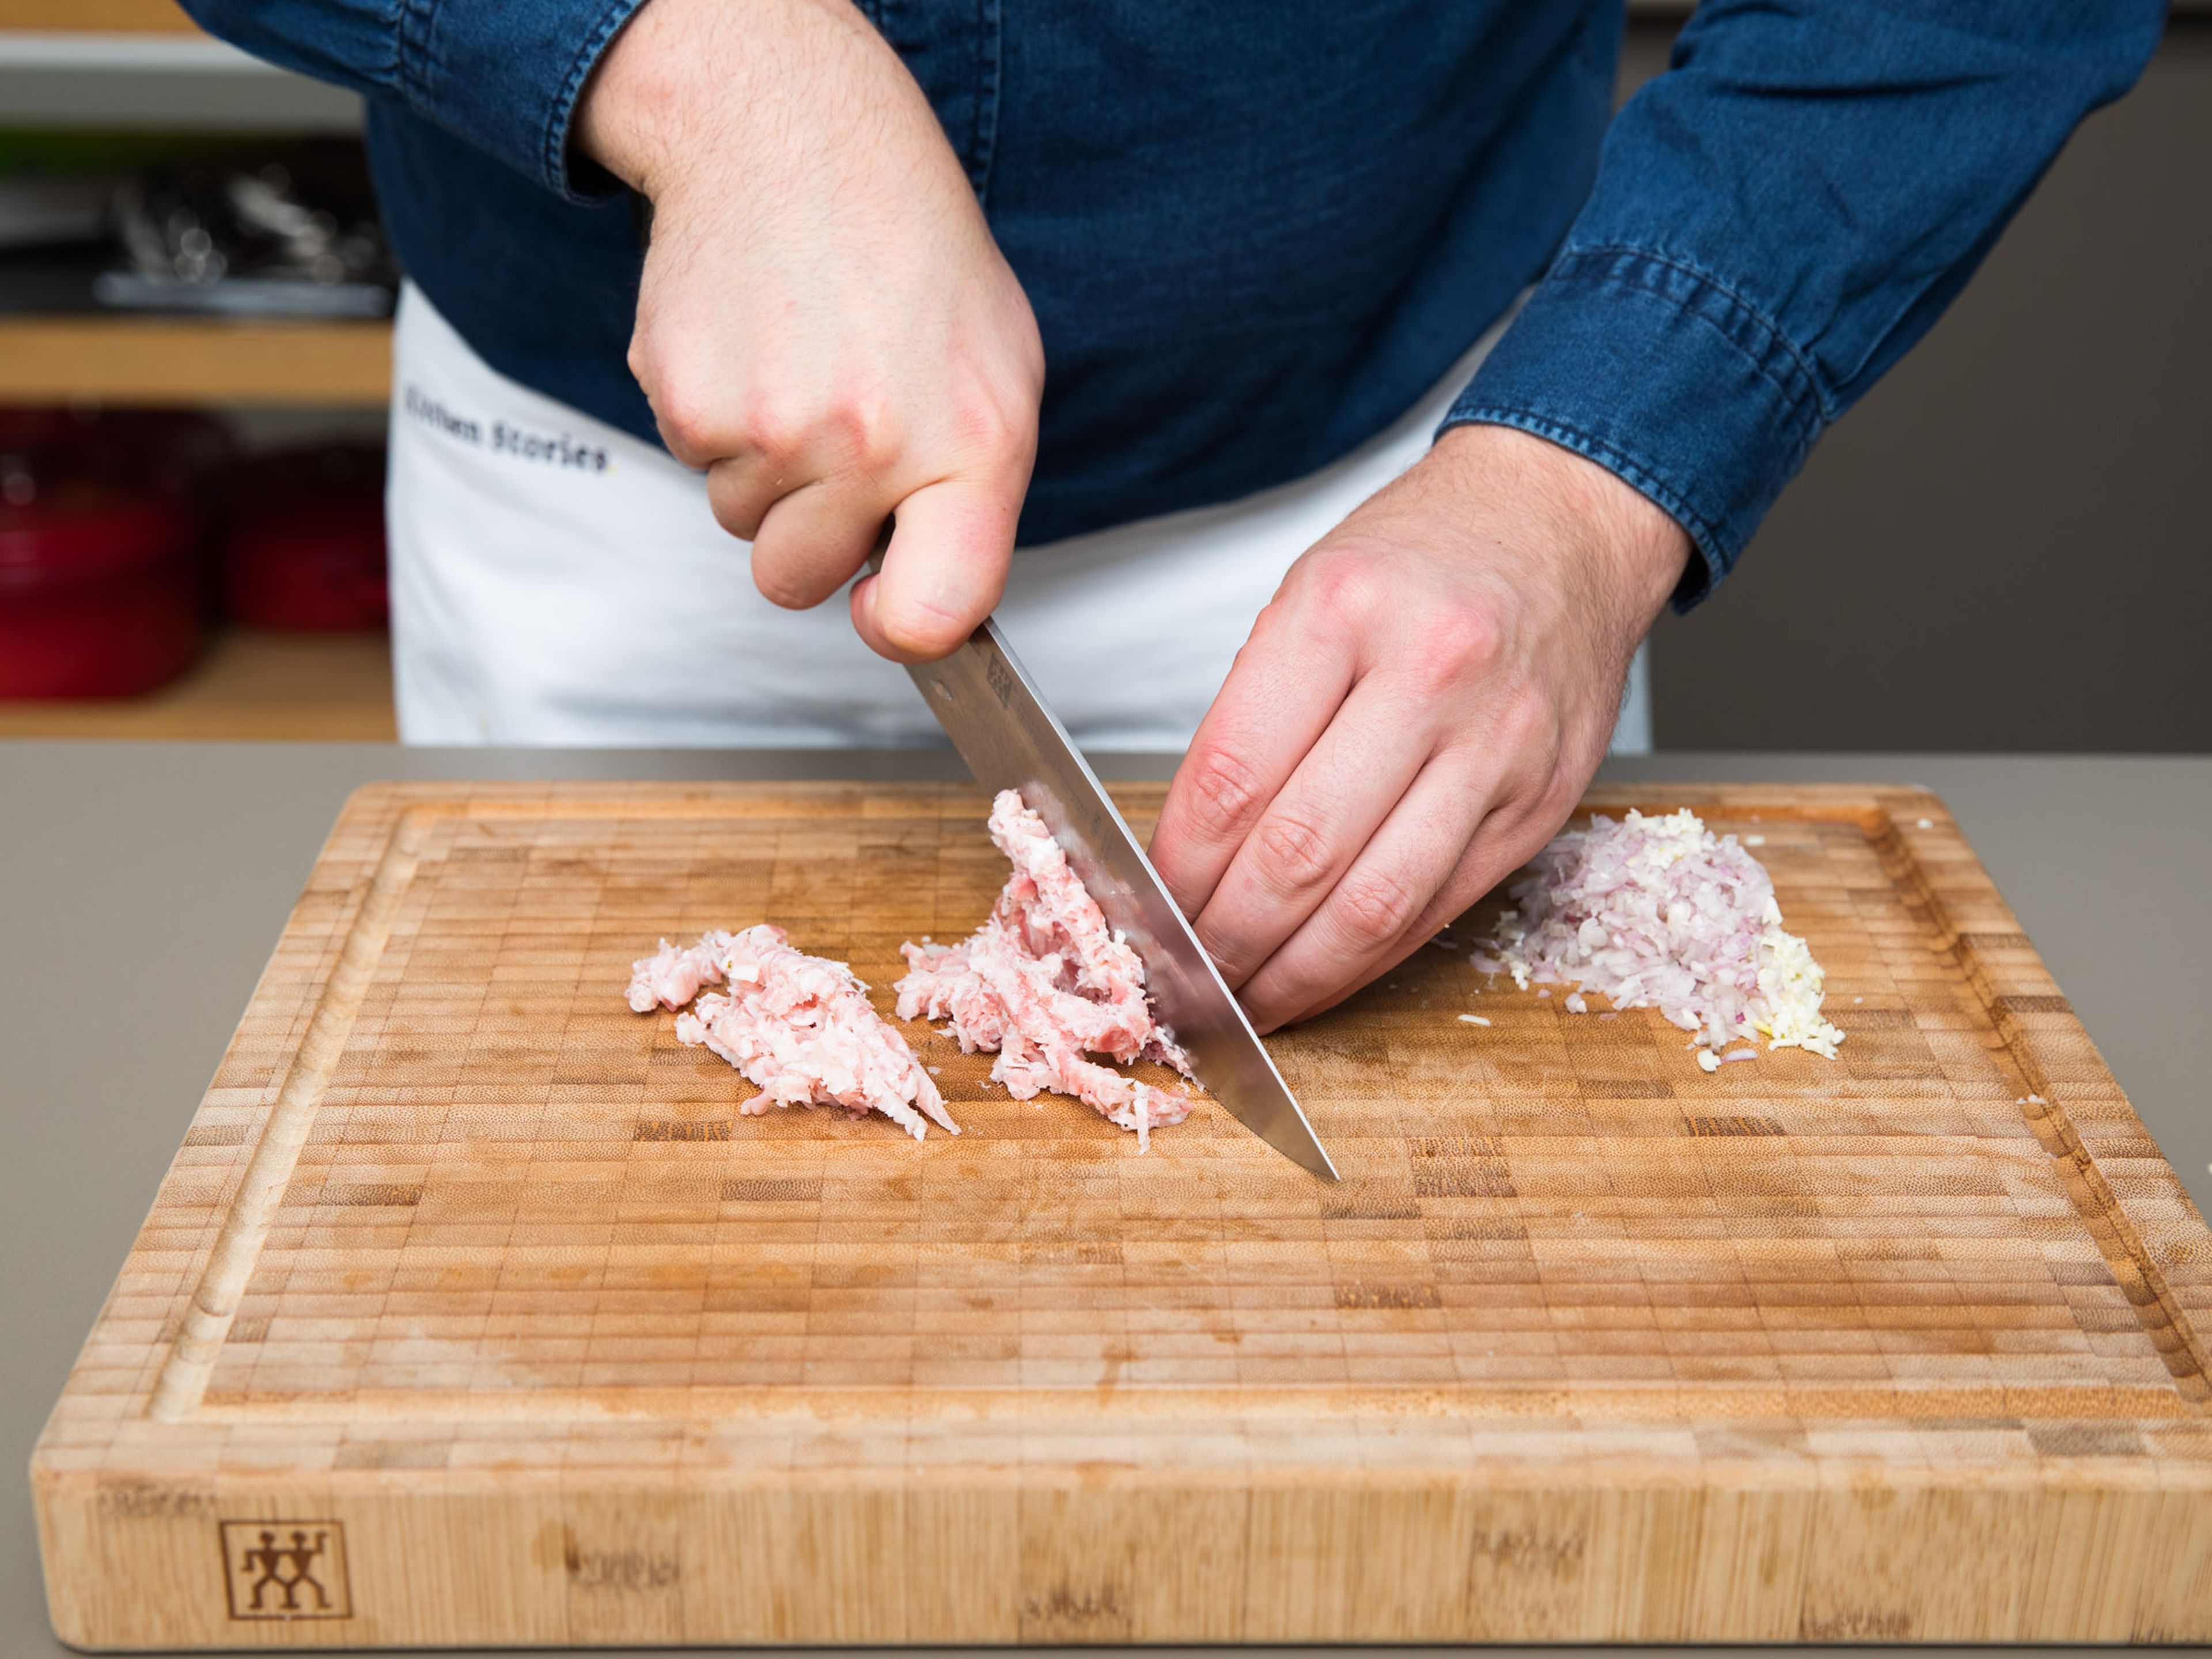 Pancetta in Würfel schneiden. Schalotten und Knoblauch schälen und fein hacken. Zitronenschale abreiben und die Hälfe auspressen. Parmesankäse reiben und in einer großen Schüssel mit Eigelben vermengen. Mit Salz und Pfeffer würzen und den Großteil des Zitronenabriebs dazugeben.